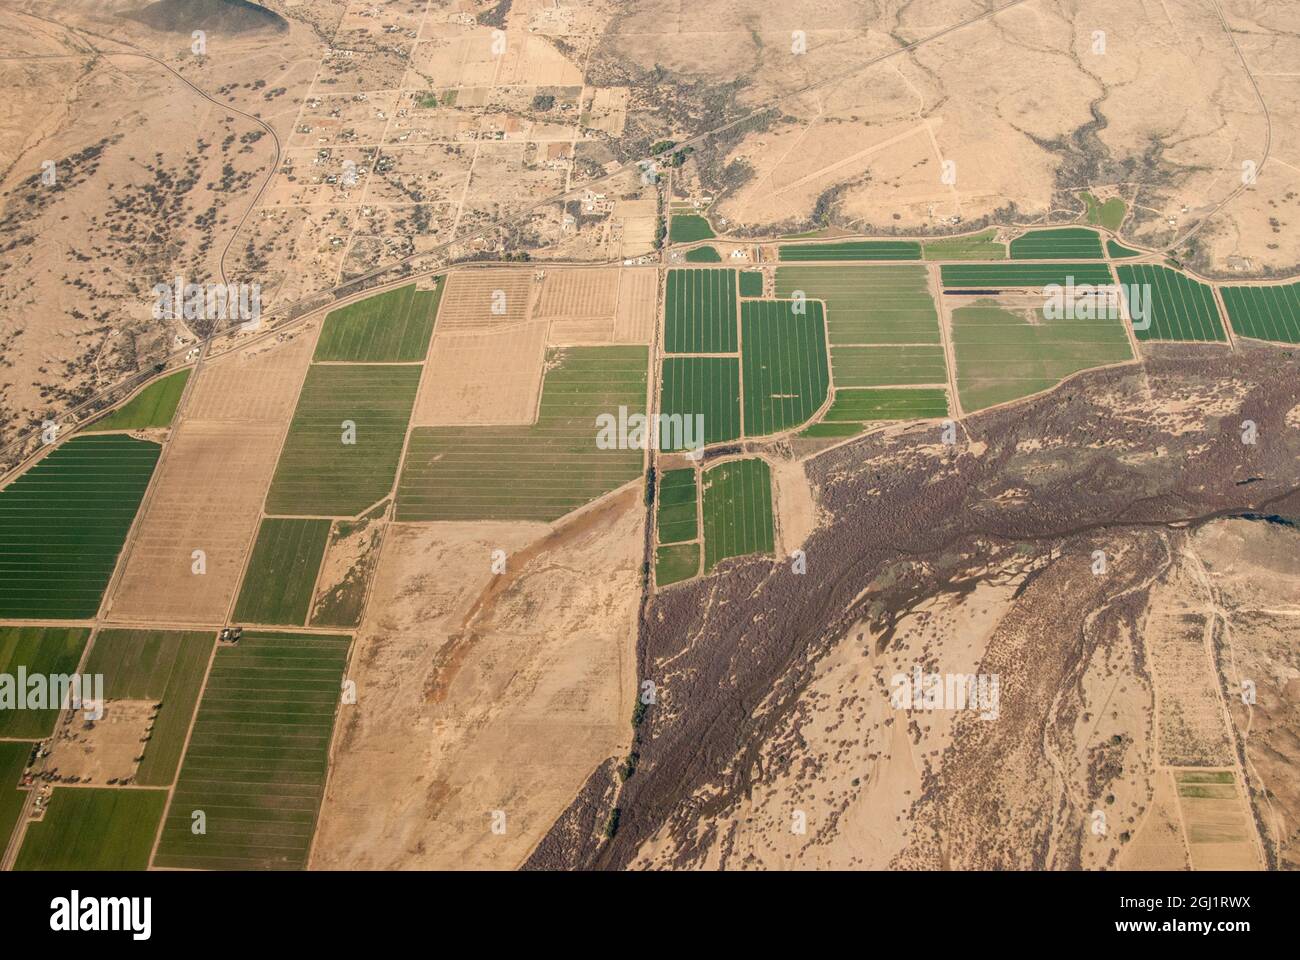 USA, Arizona. Aerial view of irrigated fields in desert. Stock Photo